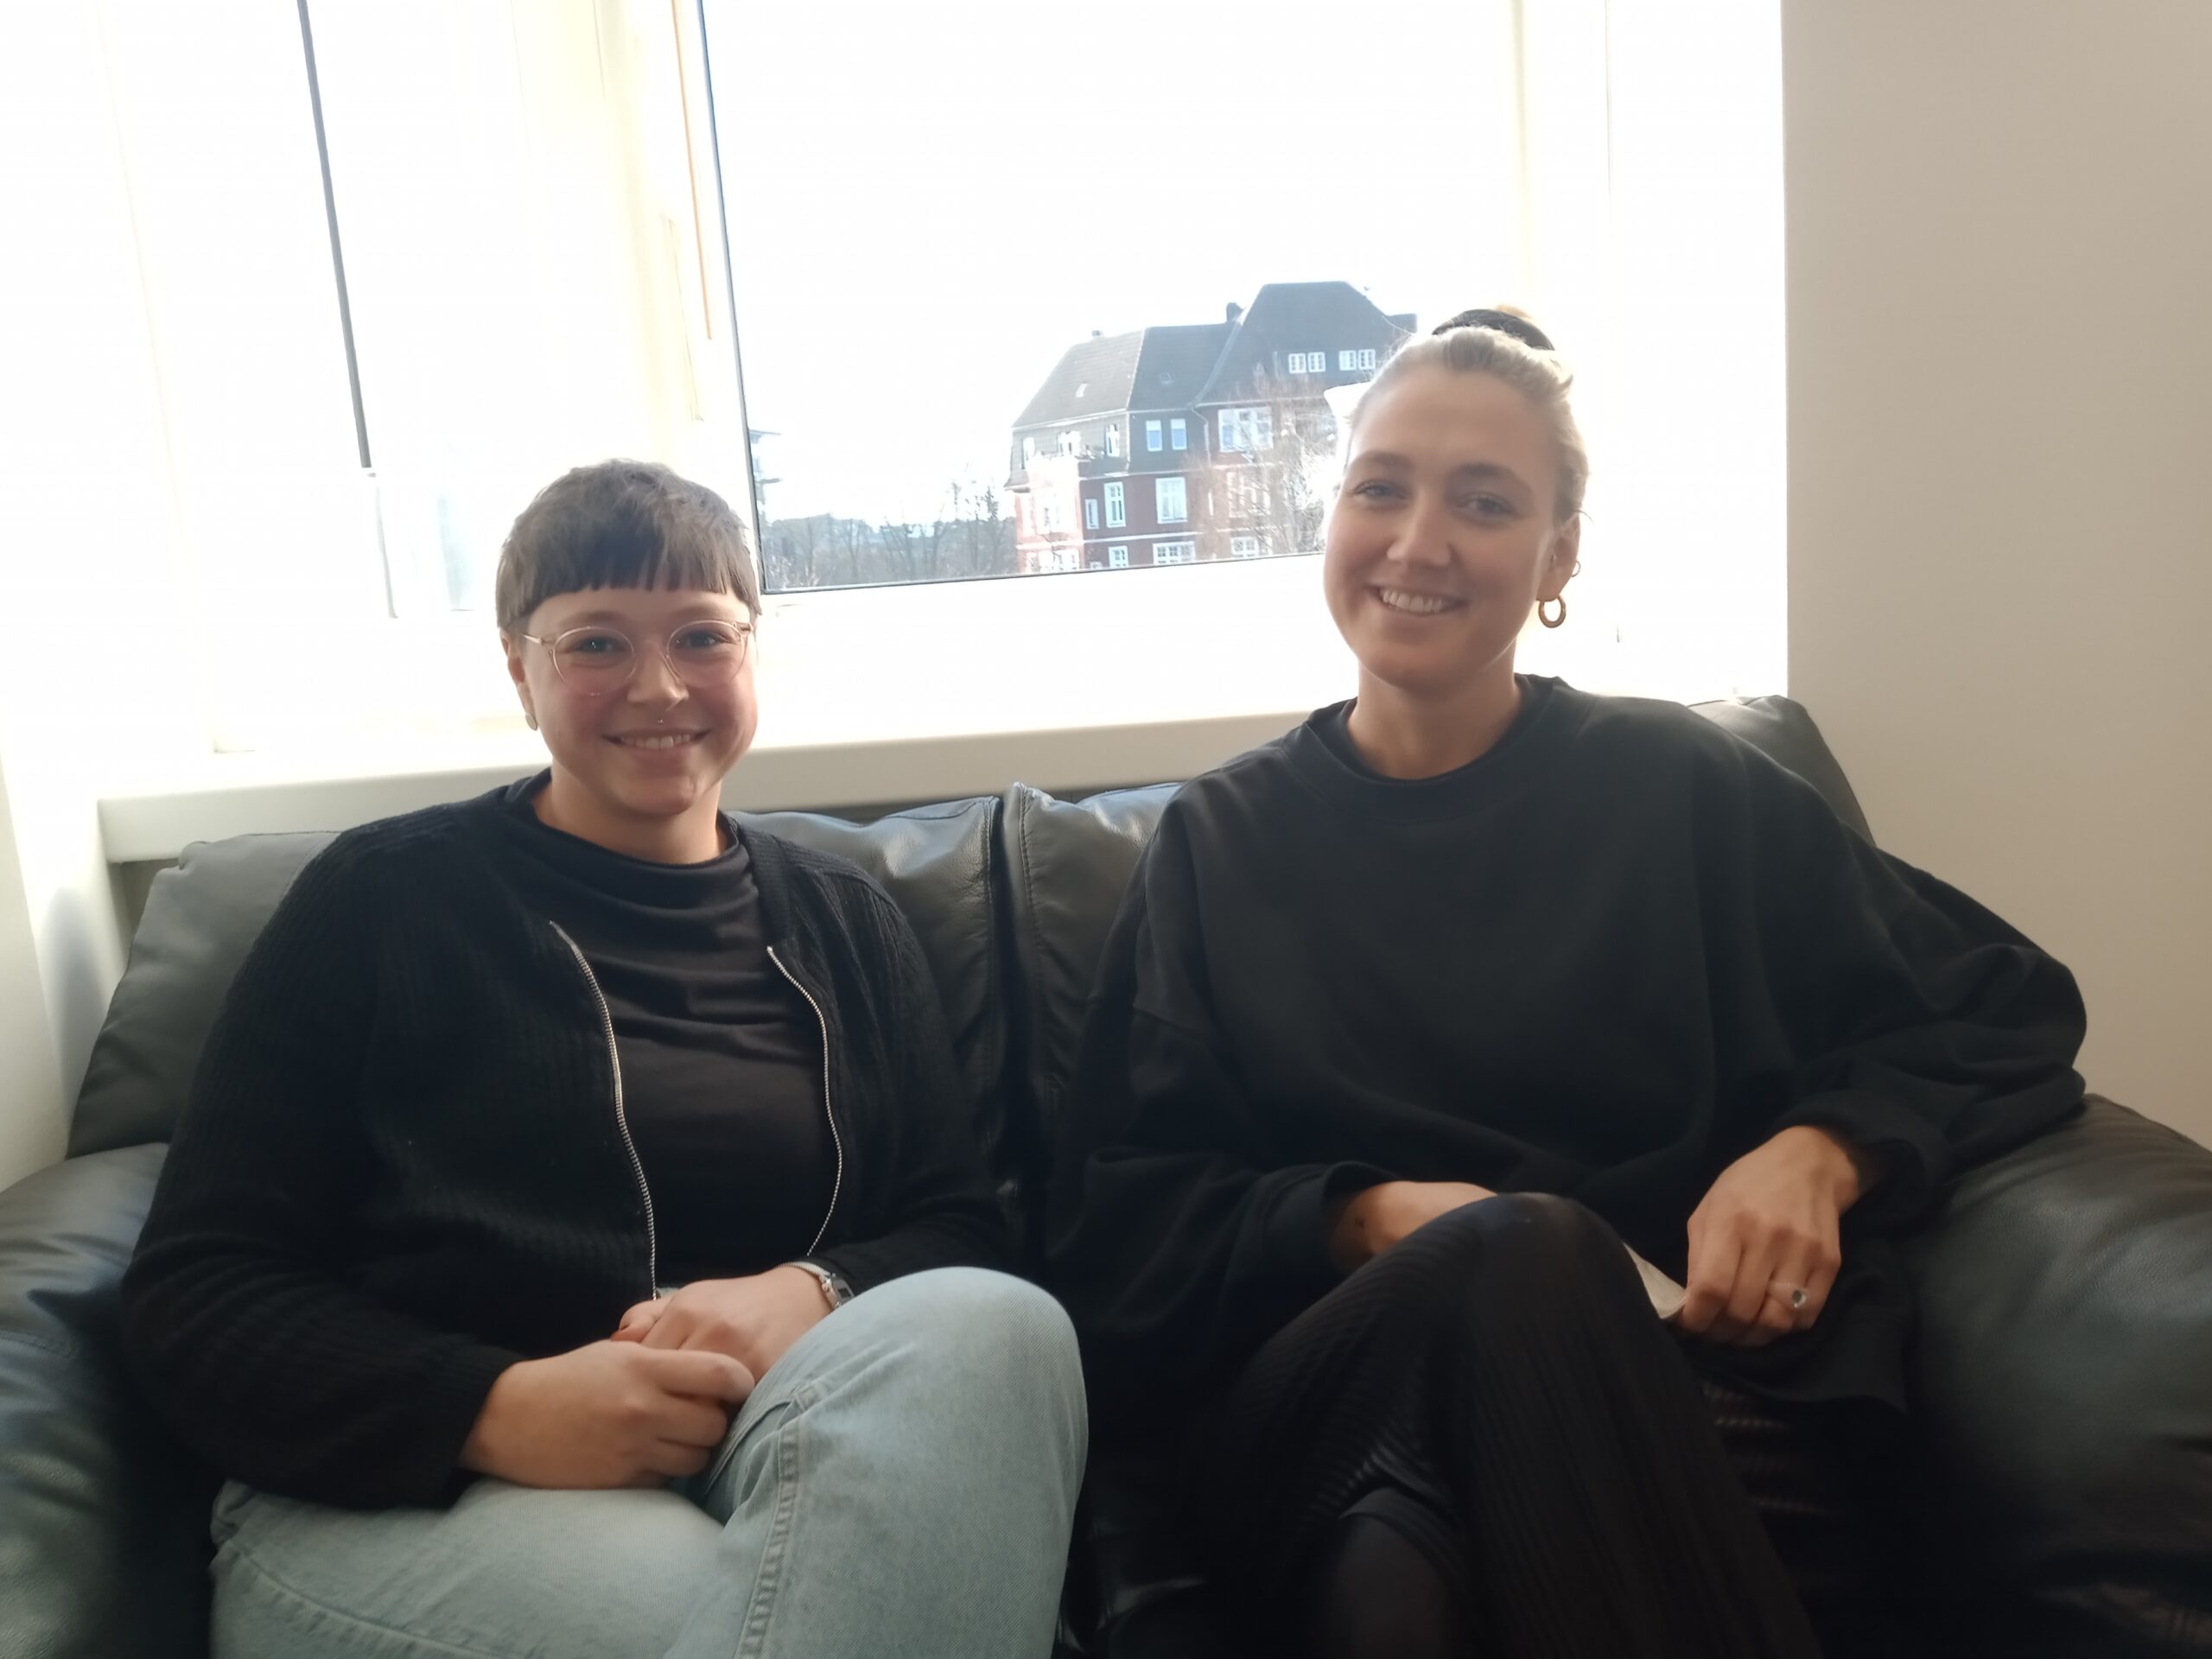 Links im Bild ist Gesa Müller, rechts Swantje Borsutzky. Die beiden sitzen auf einem Sofa in der Geschäftsstelle der Lebenshilfe Hamburg.